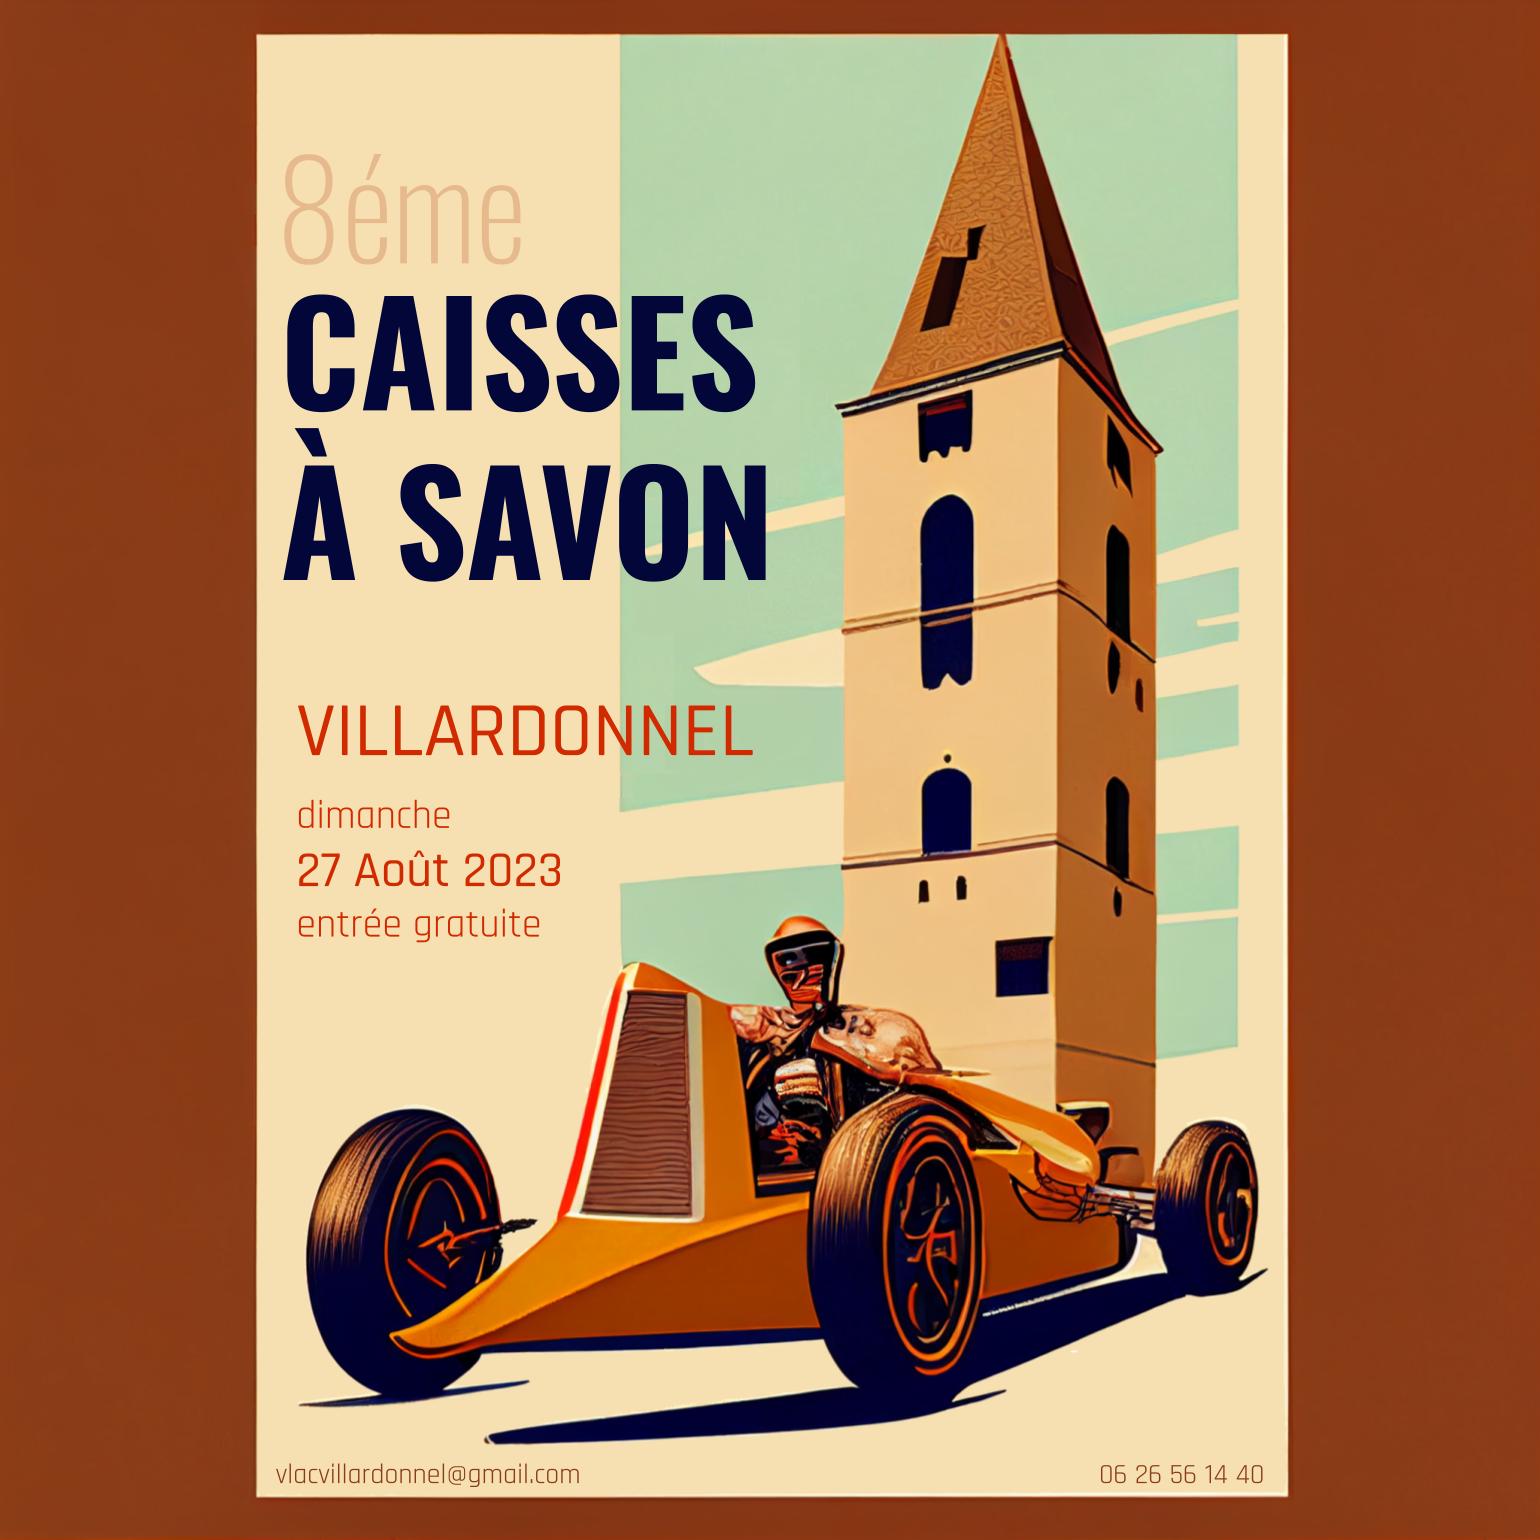 8éme édition de la course de caisses à savon de Villardonnel